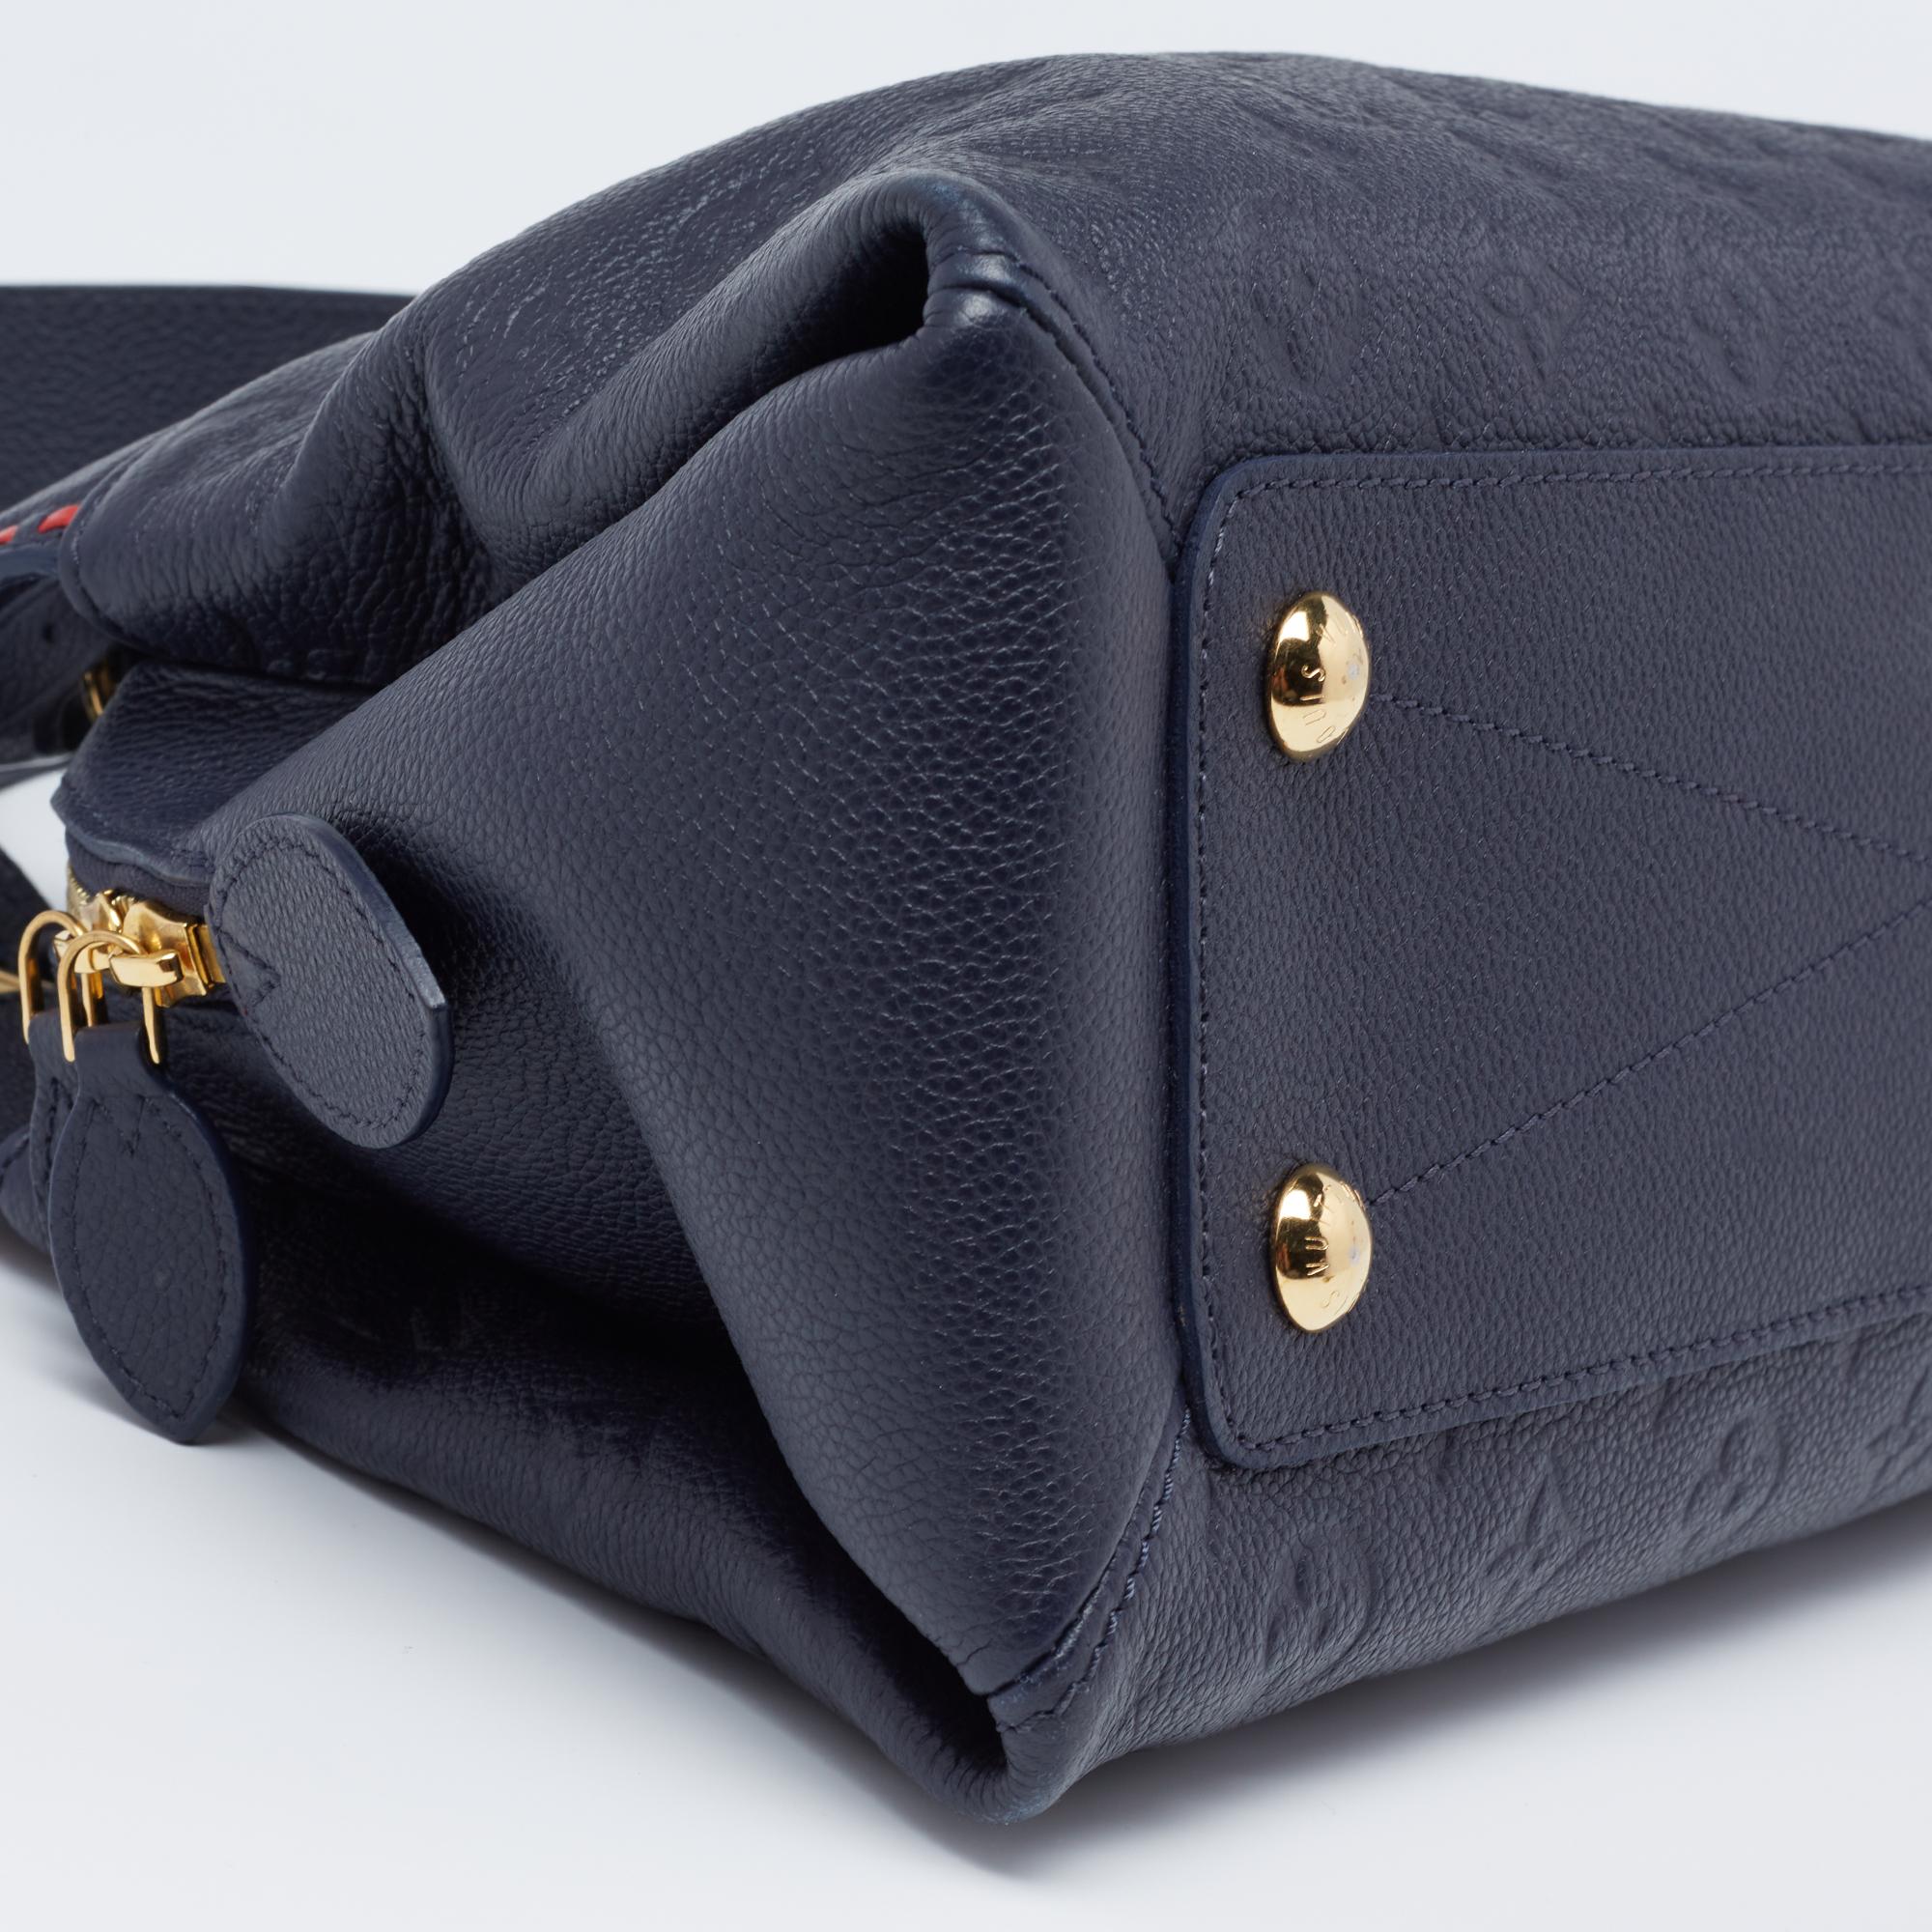 Louis Vuitton Bleu Infini Empreinte Leather Vosges MM Bag 2